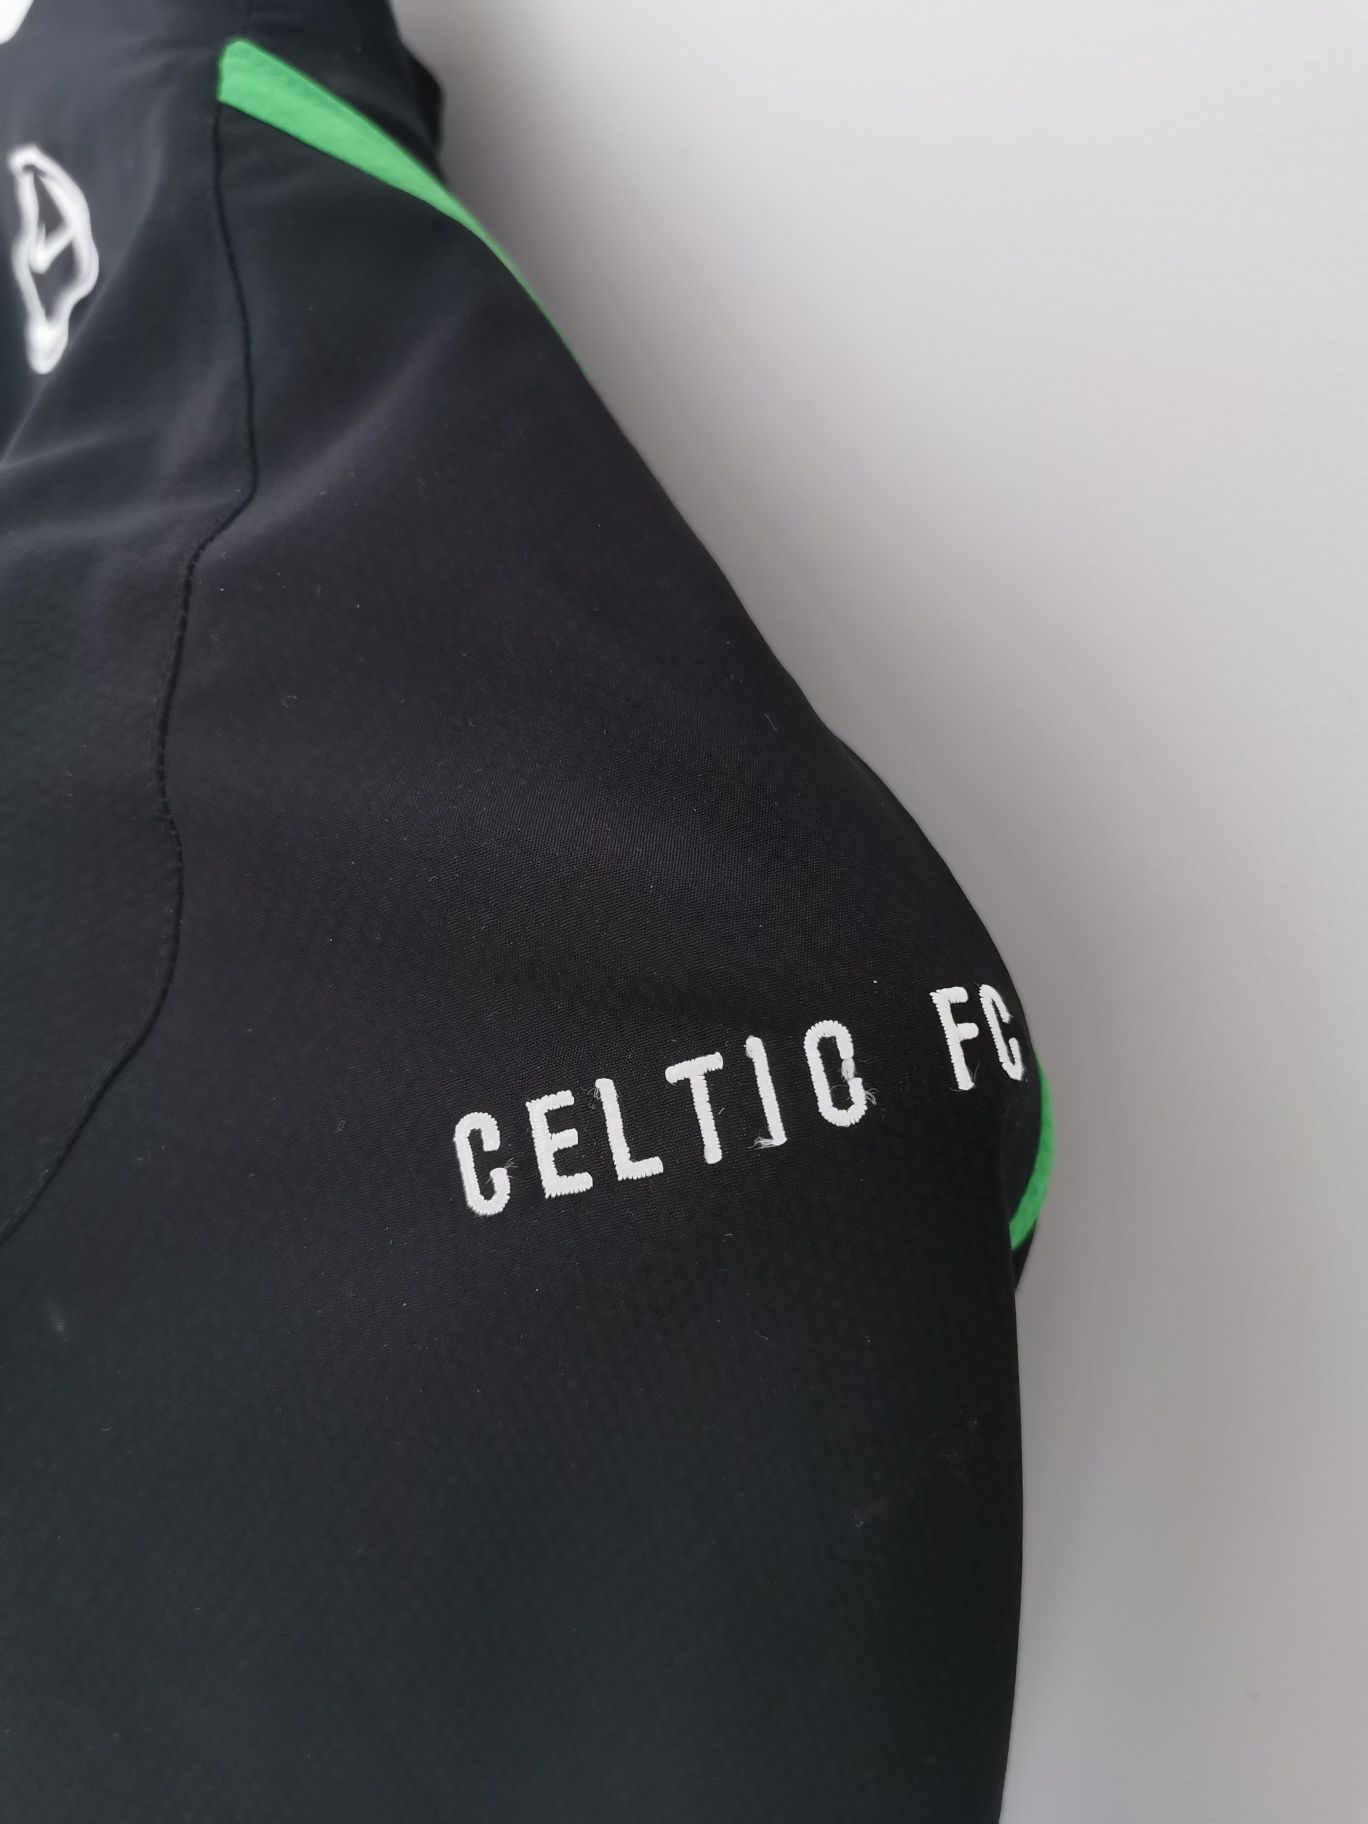 Bluza kurtka piłkarska Nike Celtic Glasgow Carling wymiarowe S